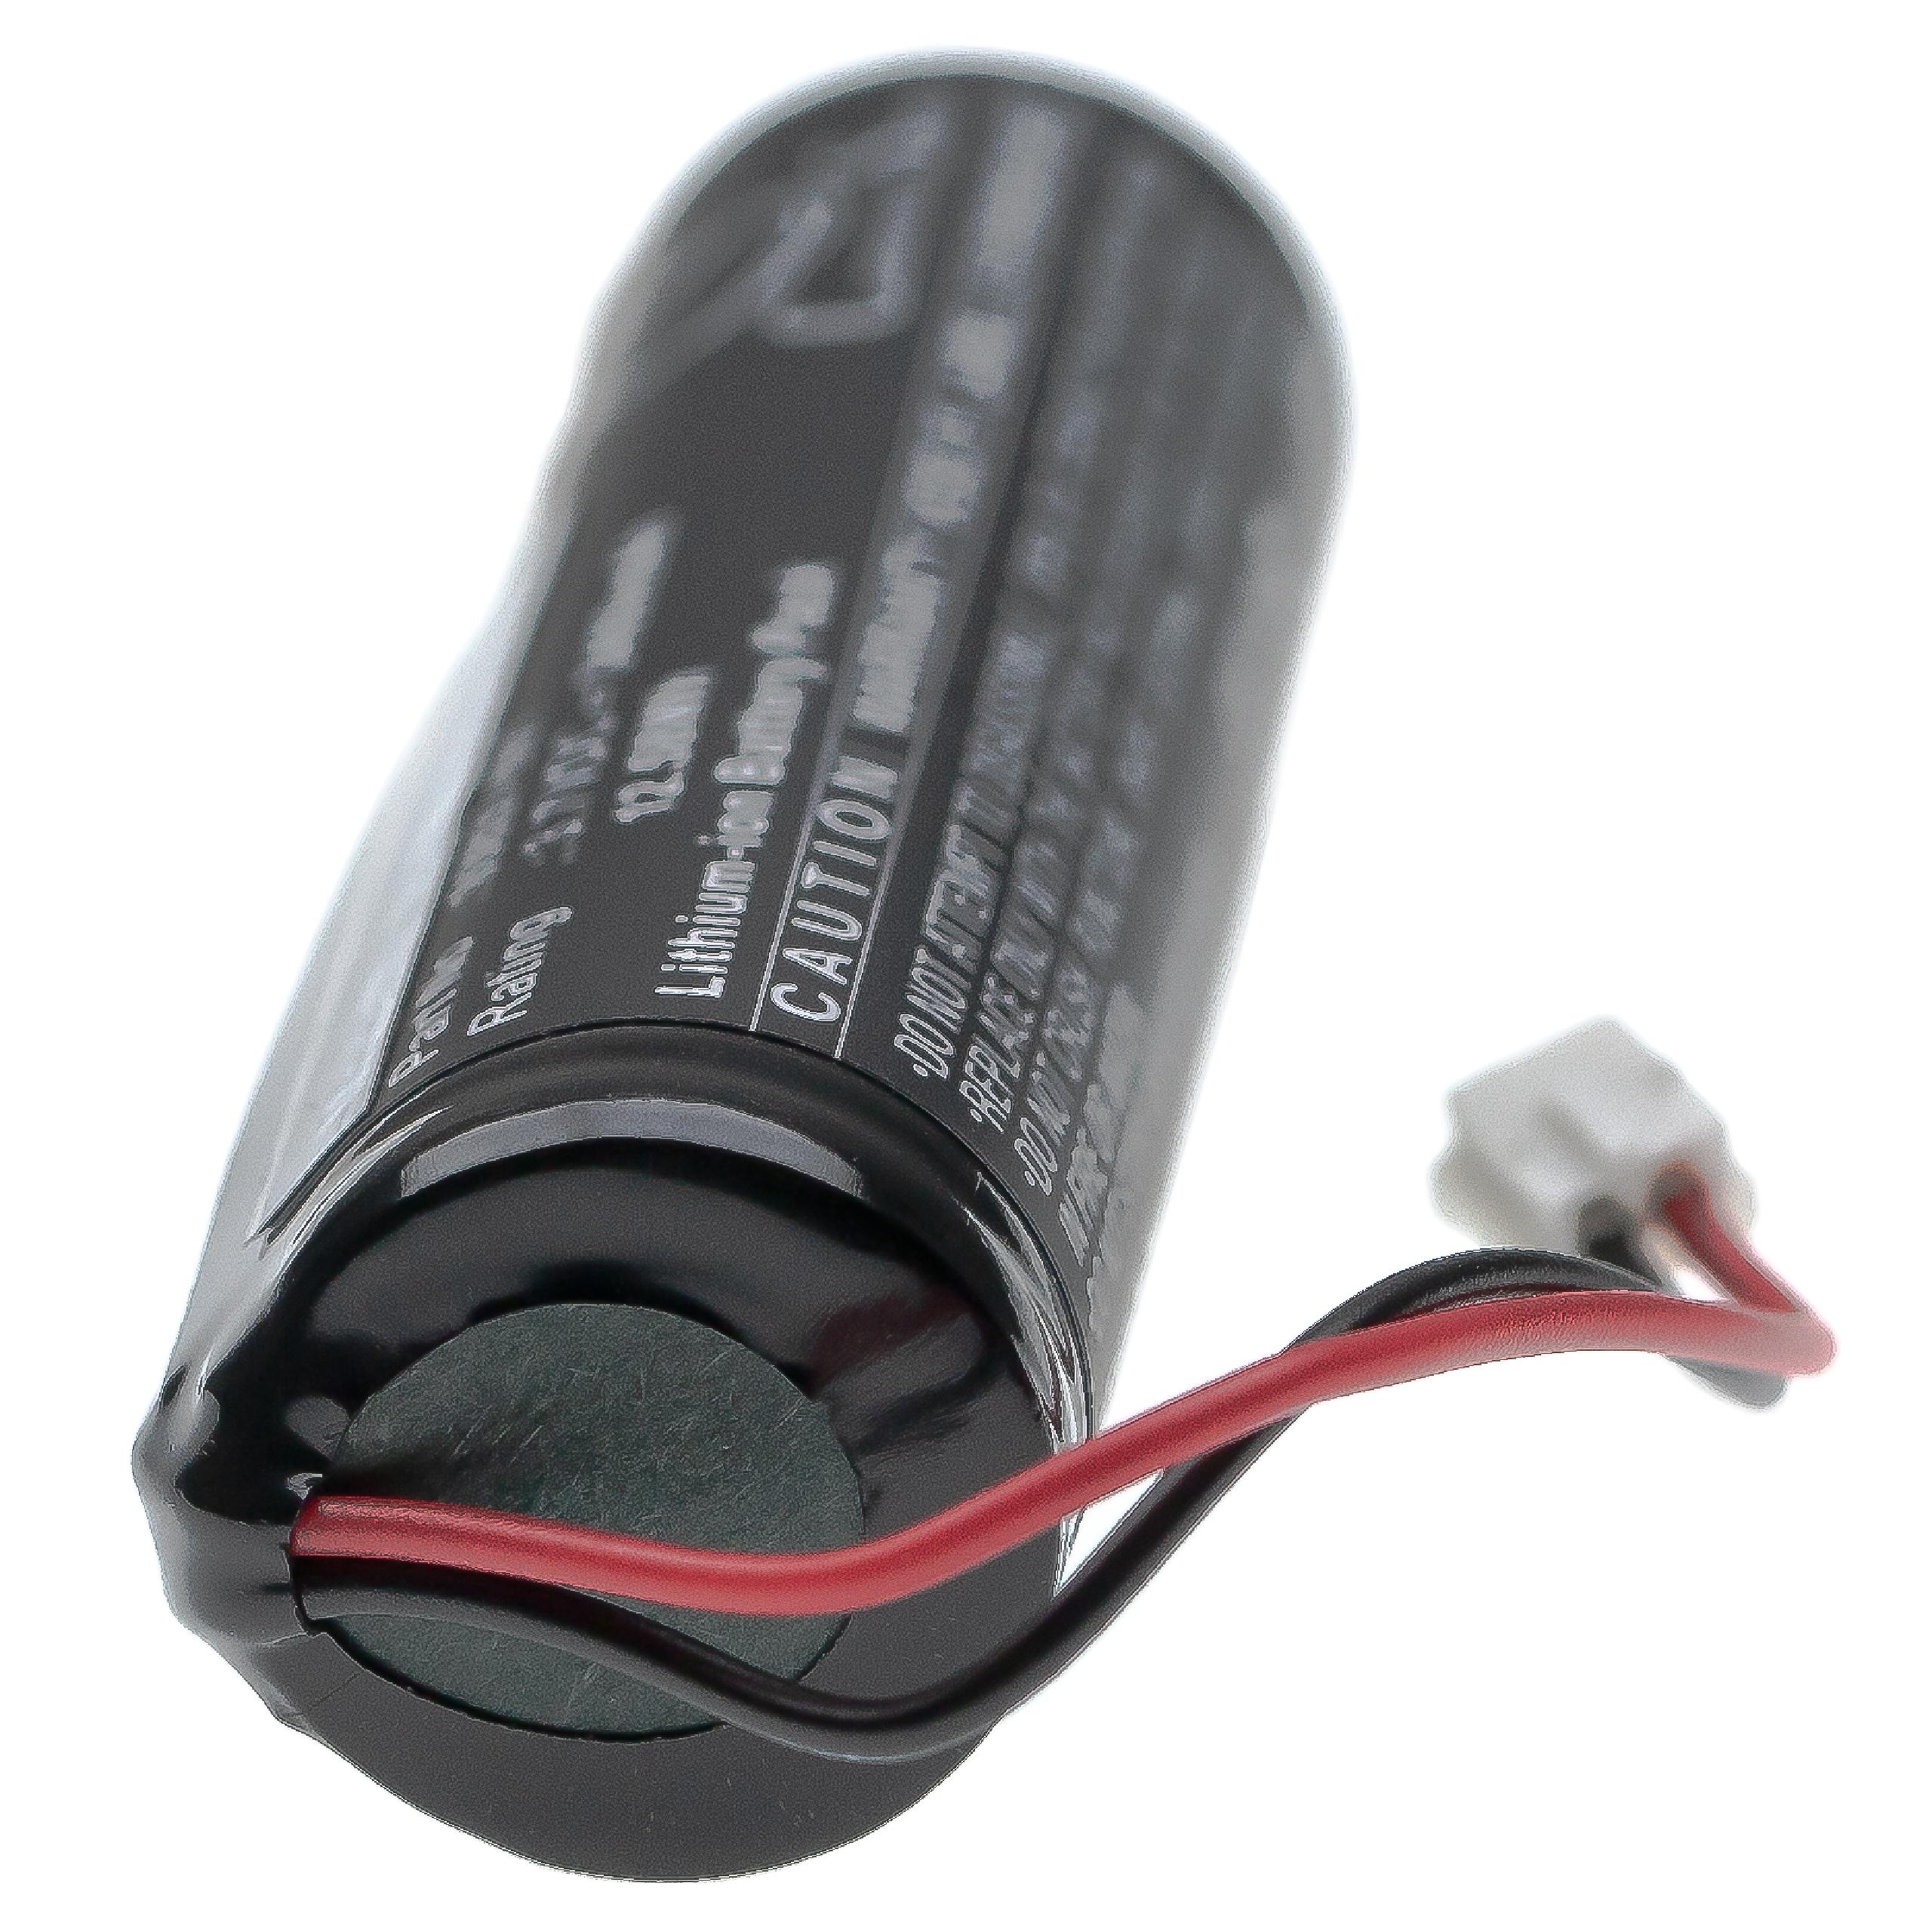 Batterie remplace Wahl 93837-001, 93837-200 pour rasoir électrique - 3400mAh 3,7V Li-ion